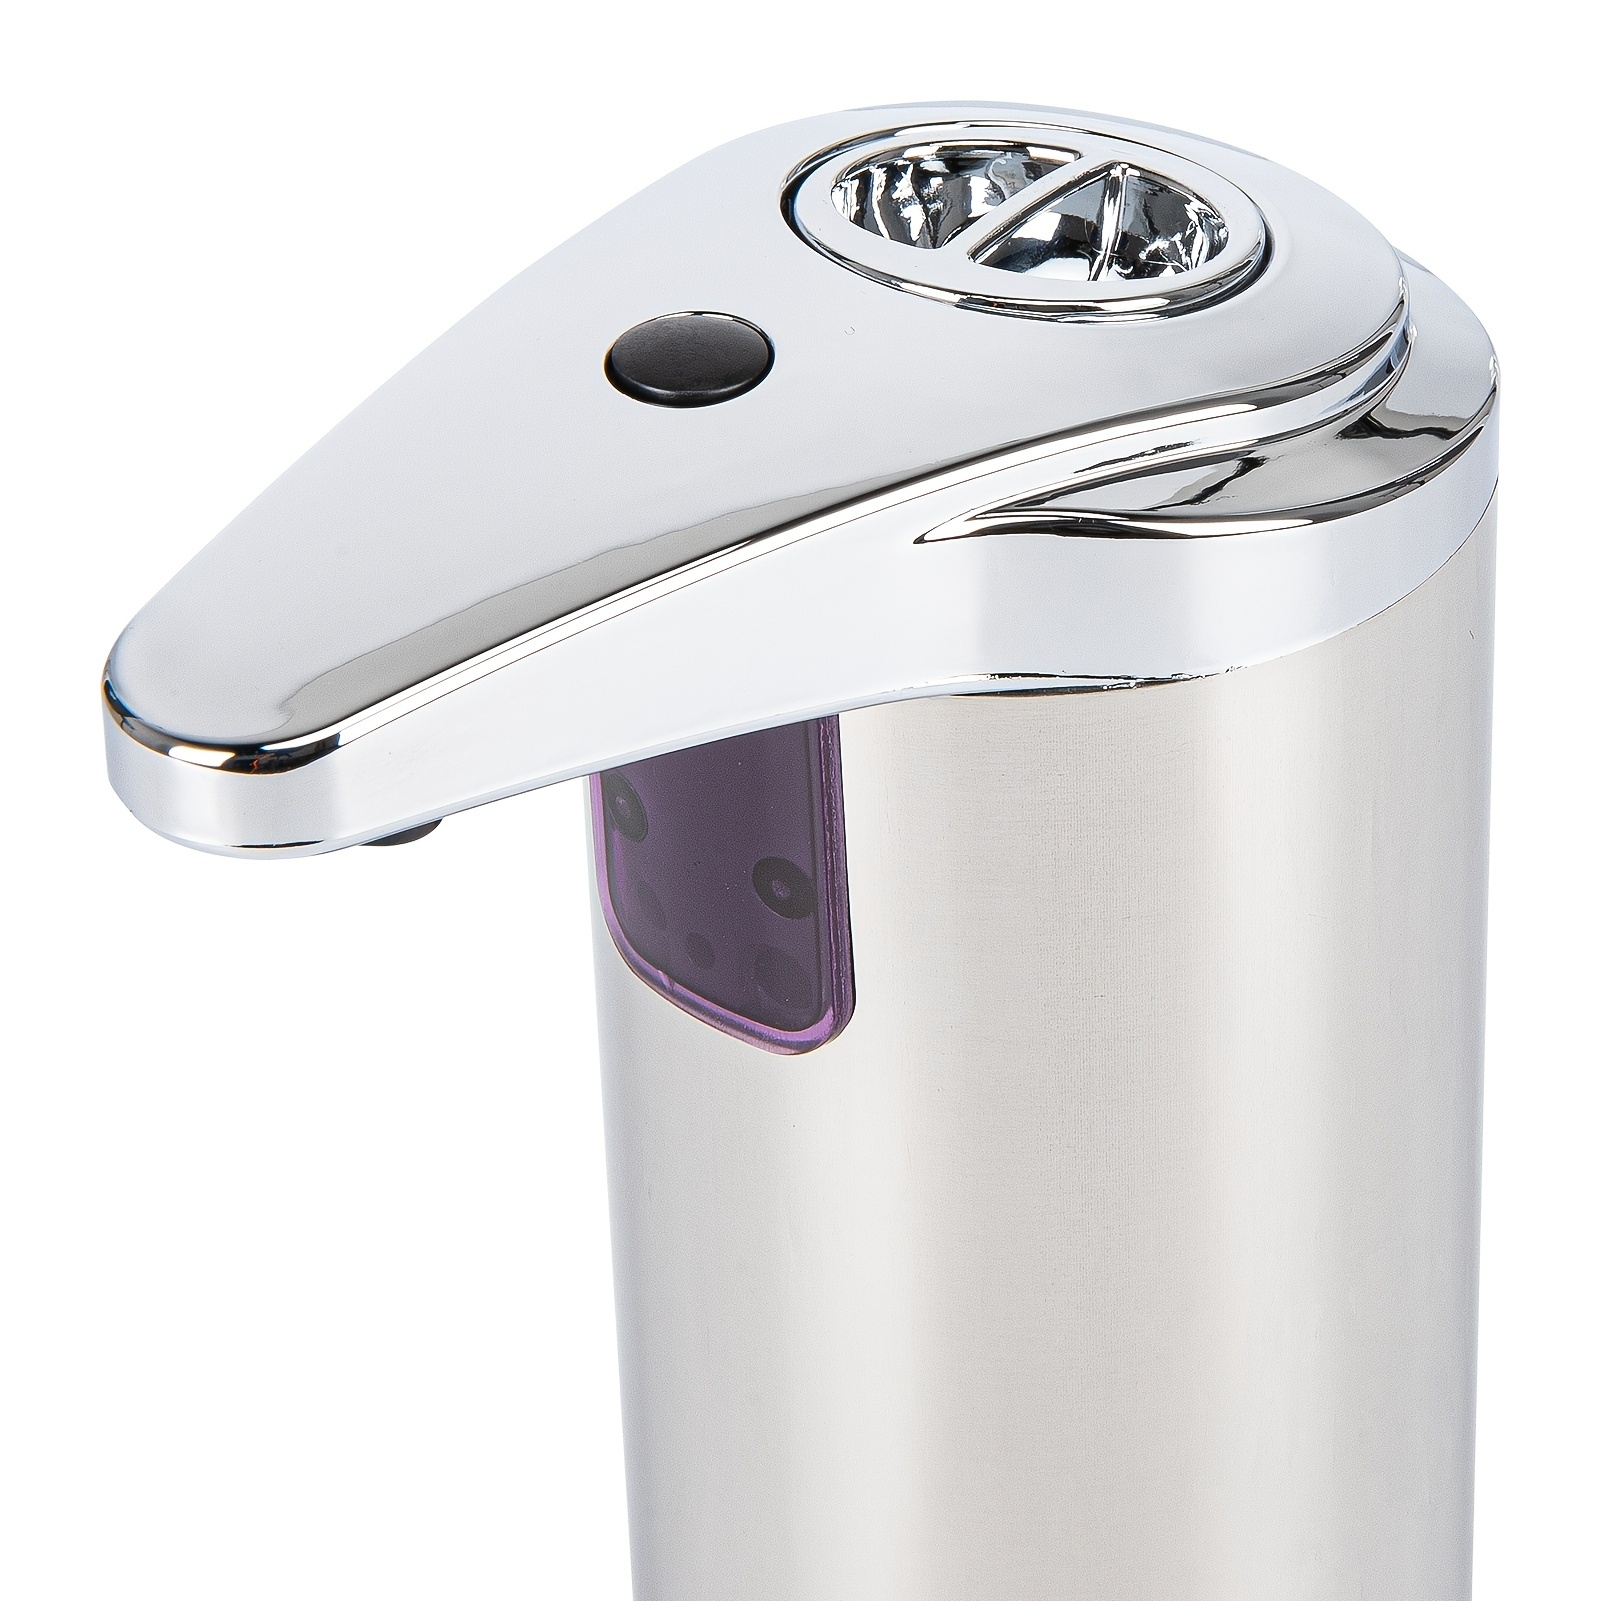 Dispensador De Jabon Liquido Automatico Para Baño Y Cocina Sensor  inteligente